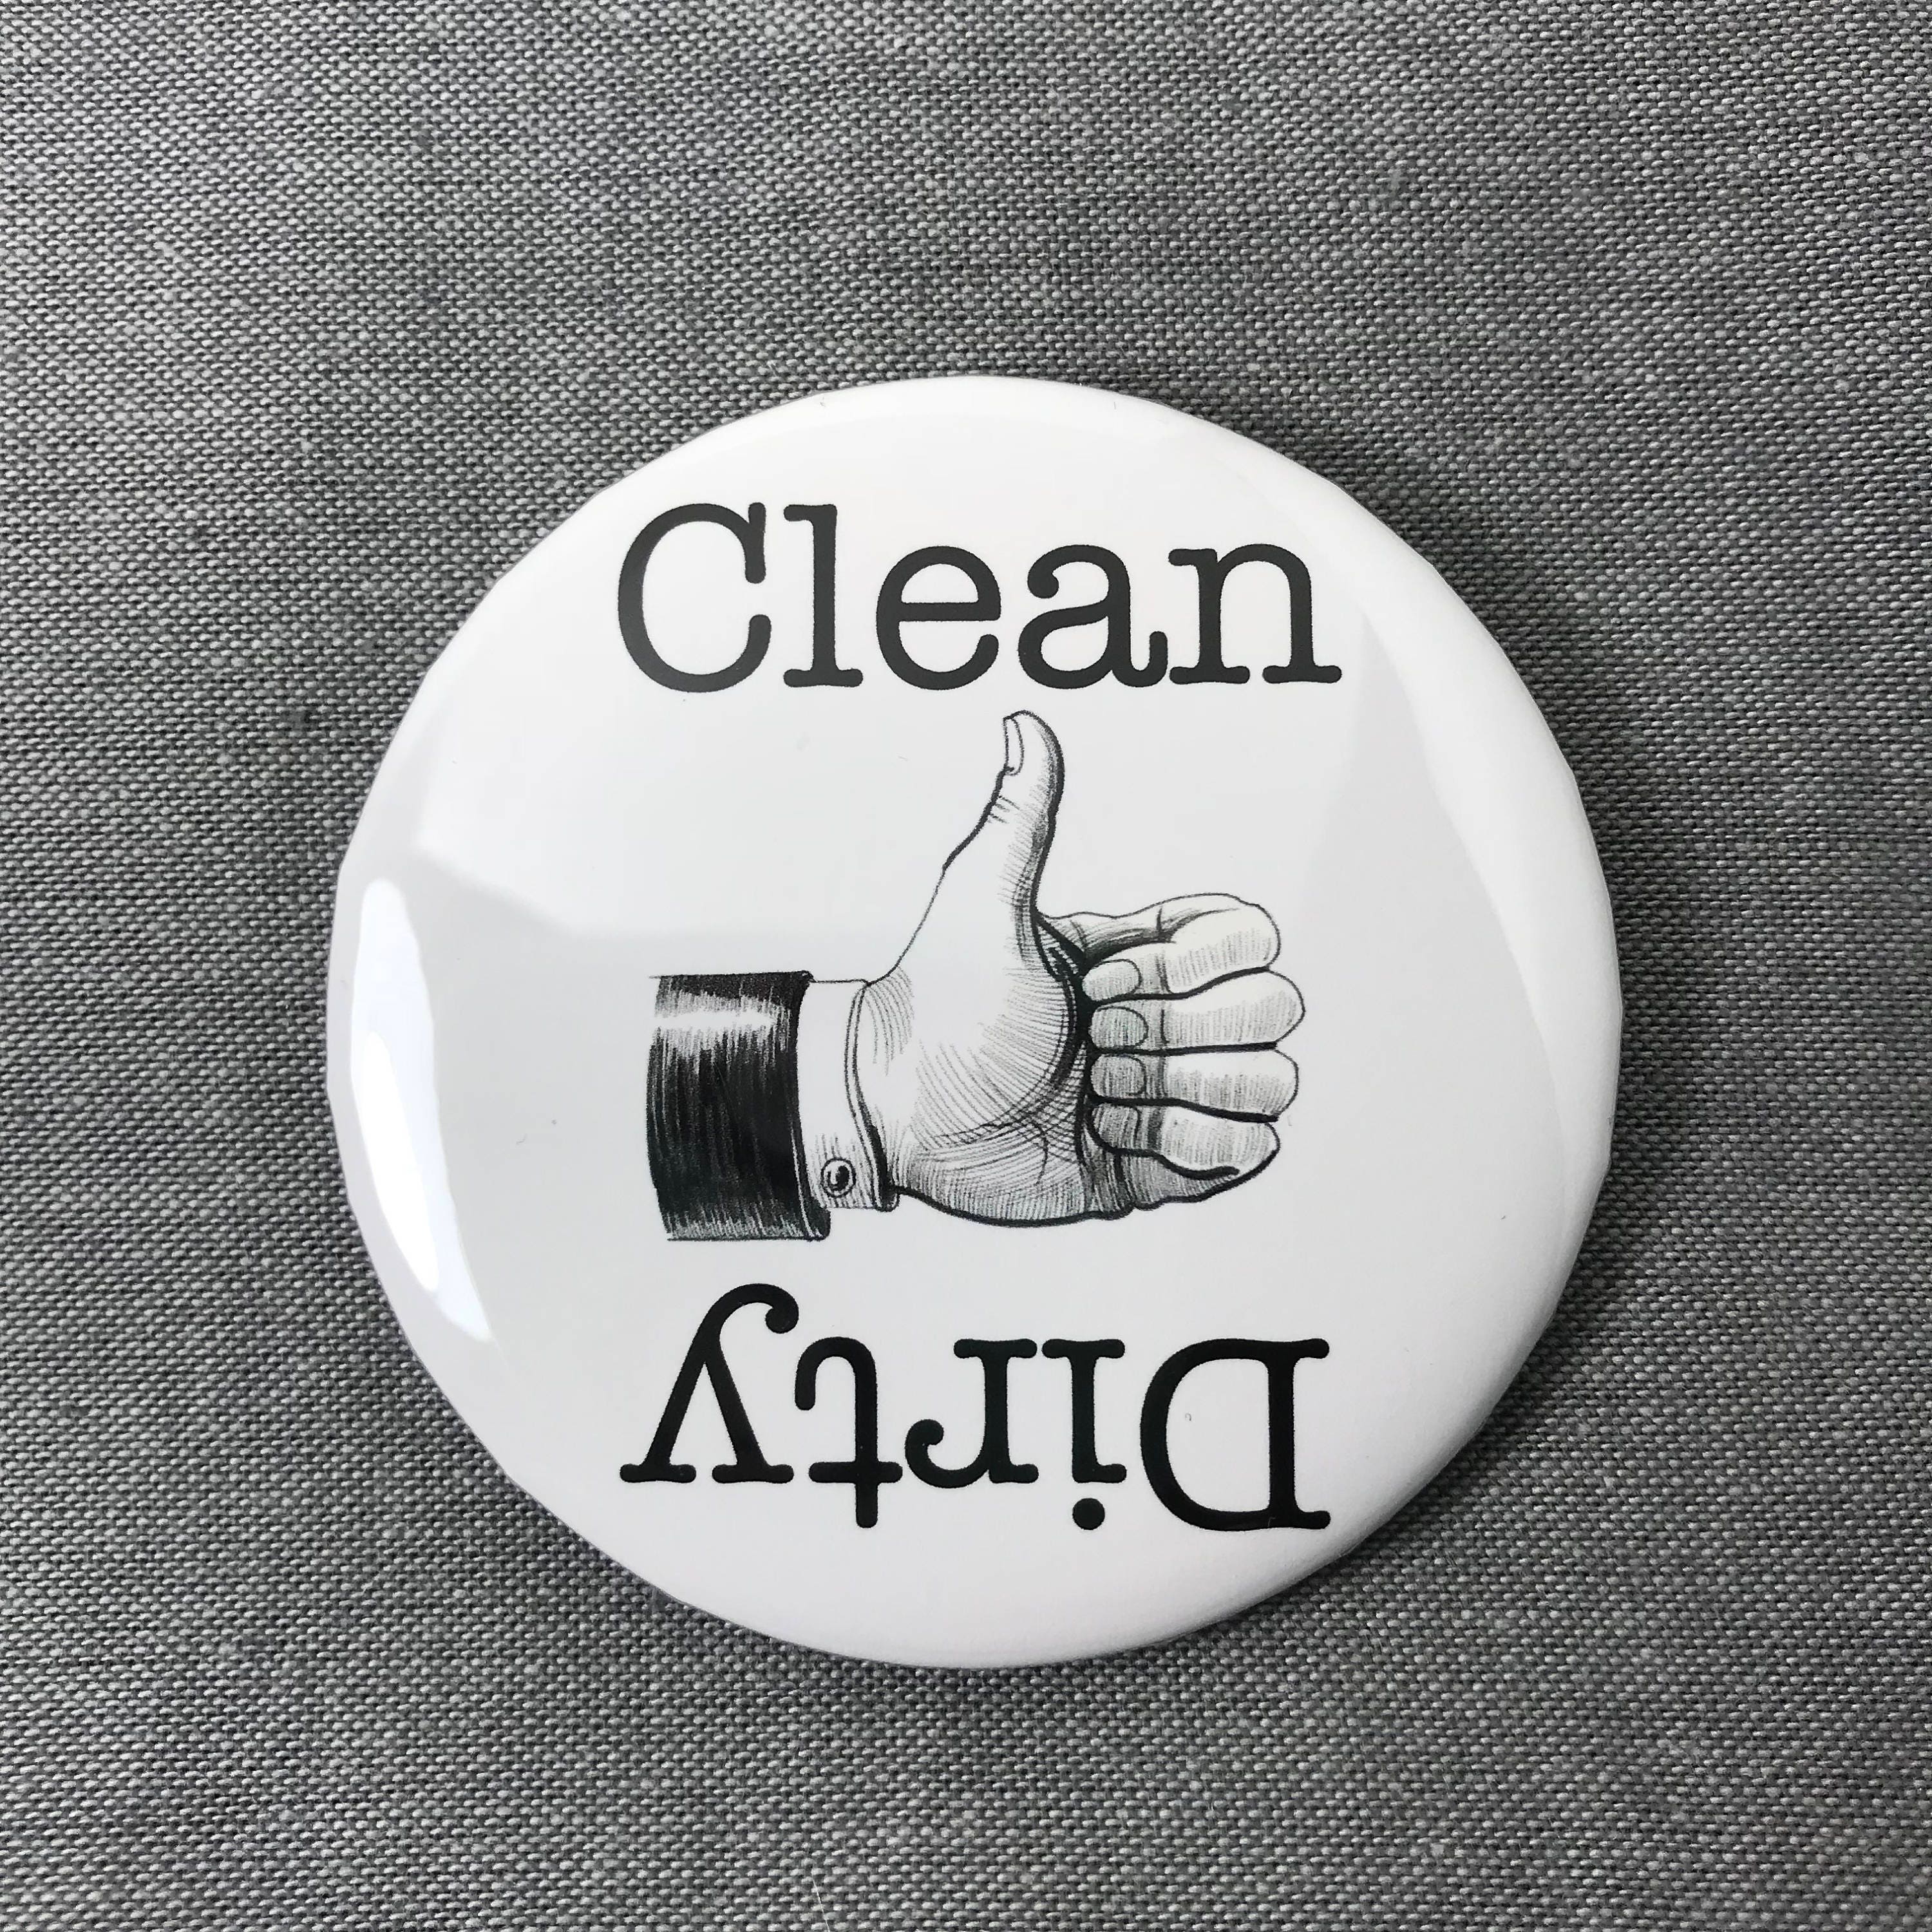 Clean Dirty Dishwasher Magnets / Dishwasher Magnet Reminder 